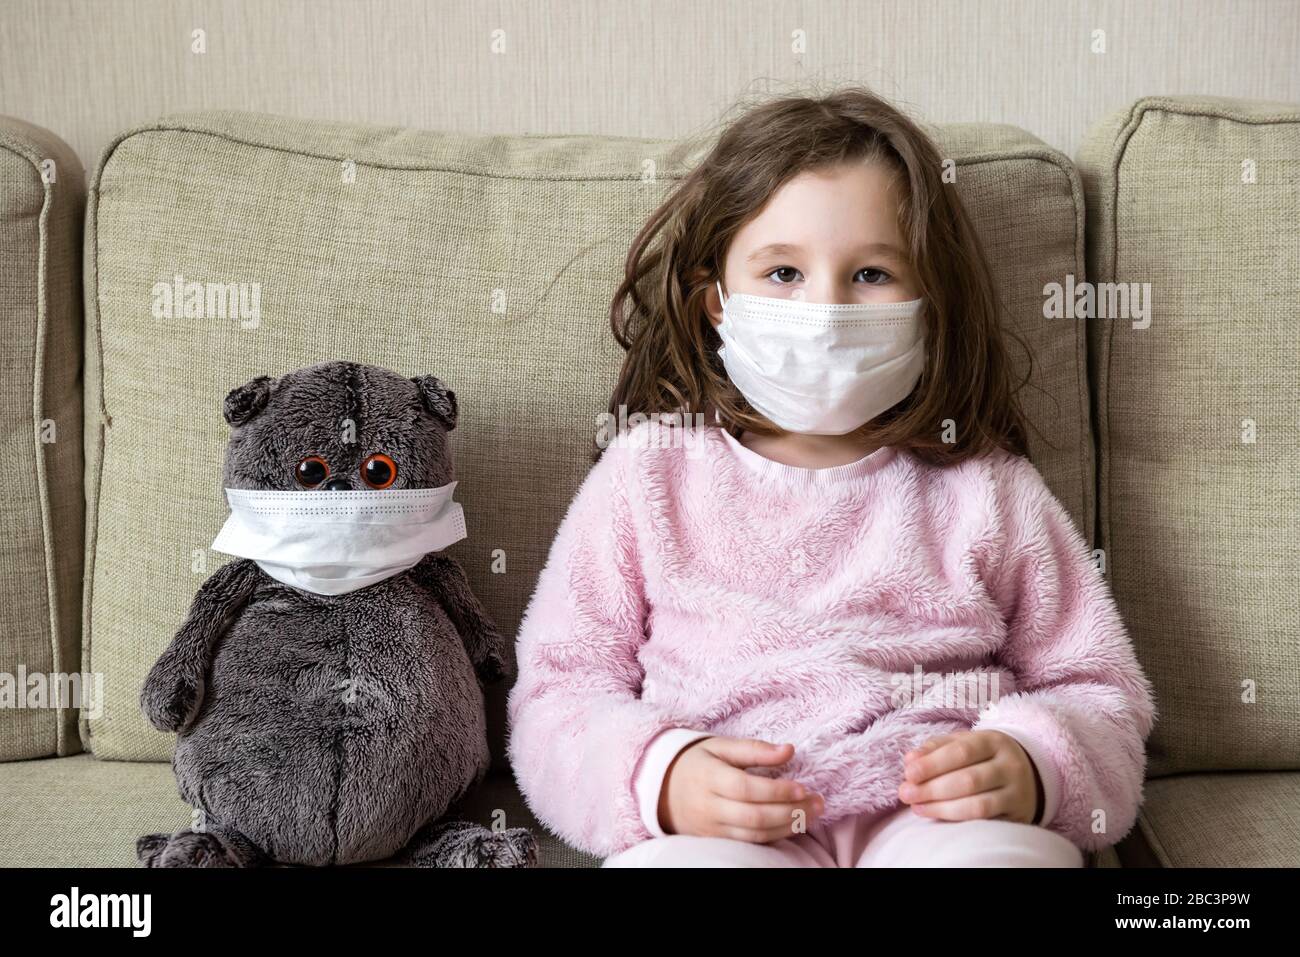 Concetto di quarantena per coronavirus, bambina con giocattolo sul divano a casa durante la pandemia di COVID-19. Capretto in maschera medica per la protezione al virus corona ind Foto Stock